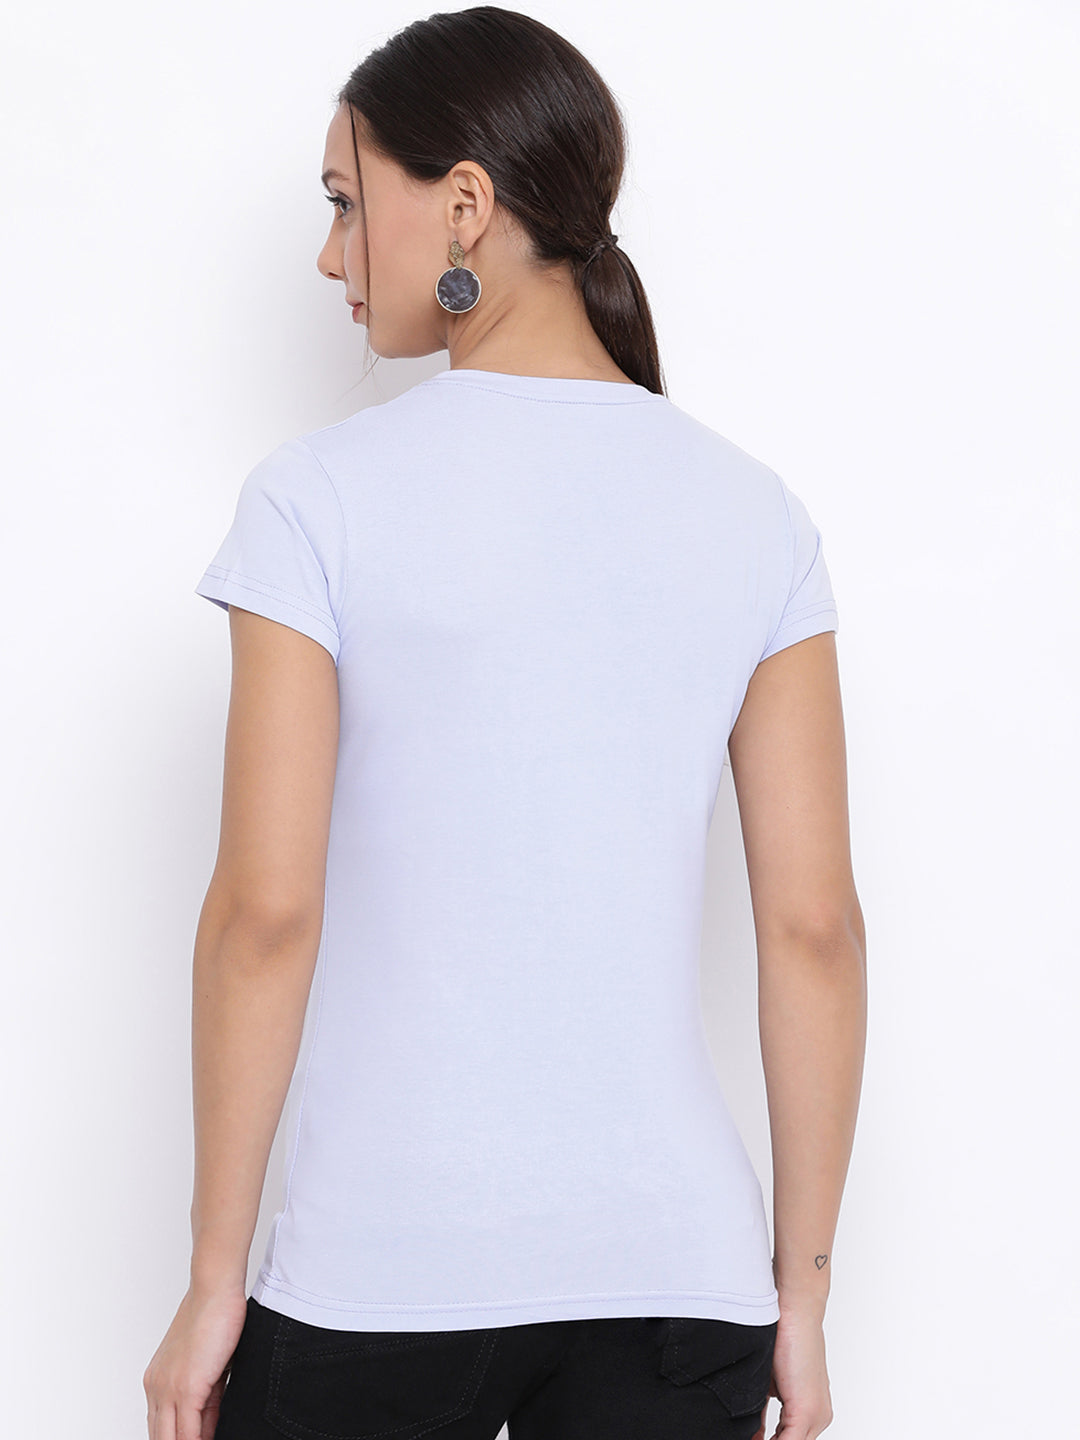 Blue Printed V-Neck T-Shirt - Women T-Shirts